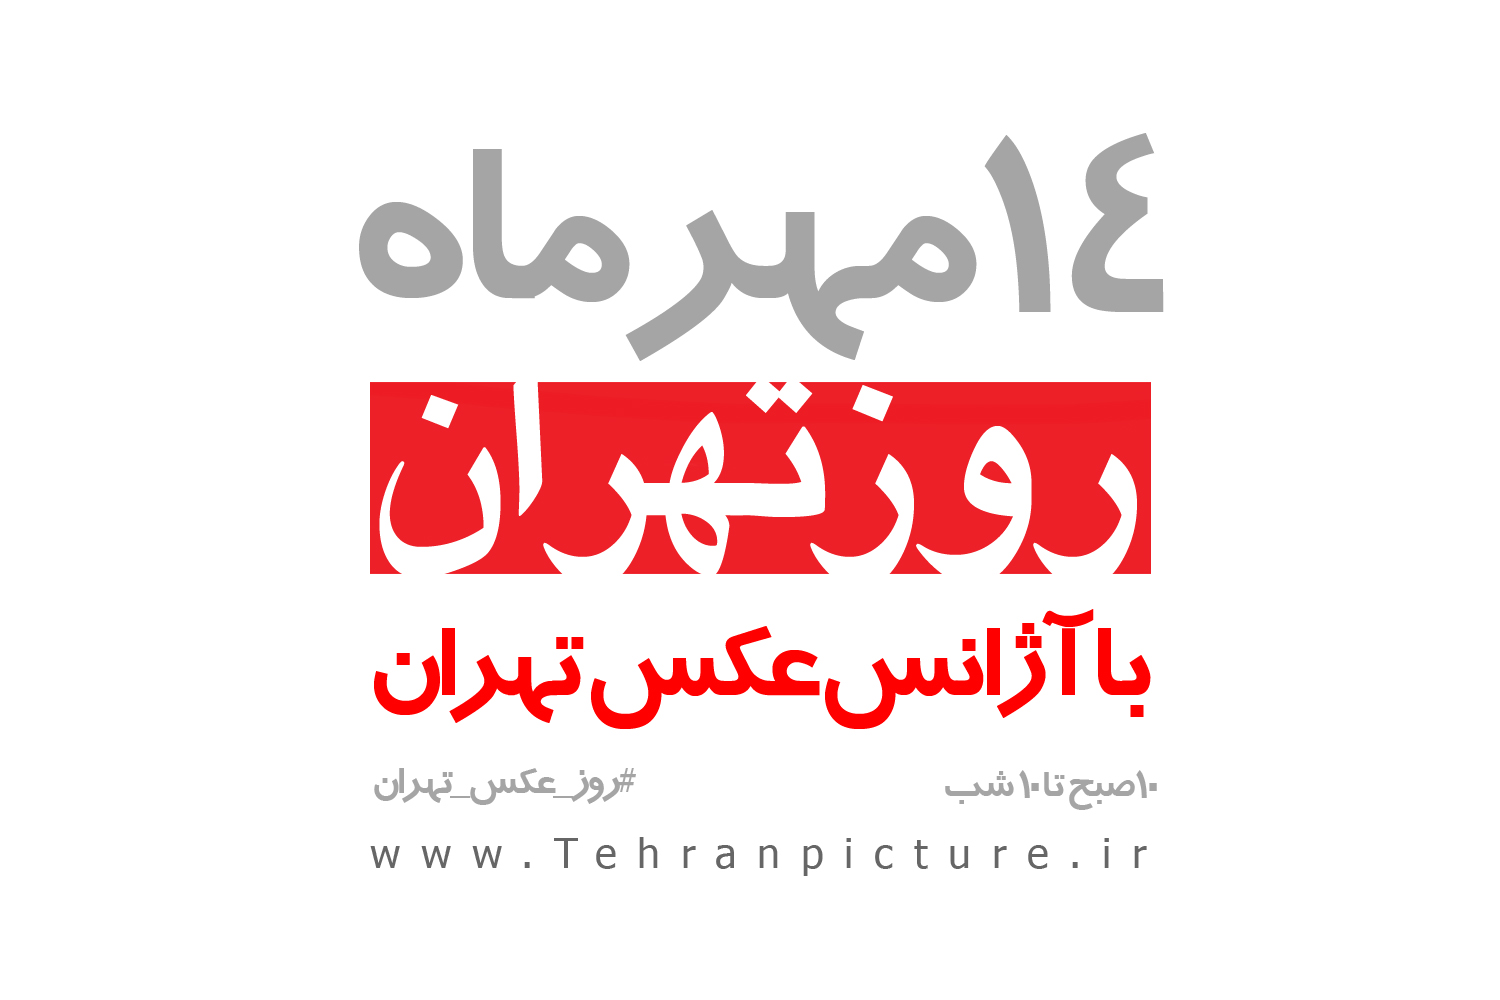 فراخوان تور مسابقه عکاسی “روز عکس تهران”